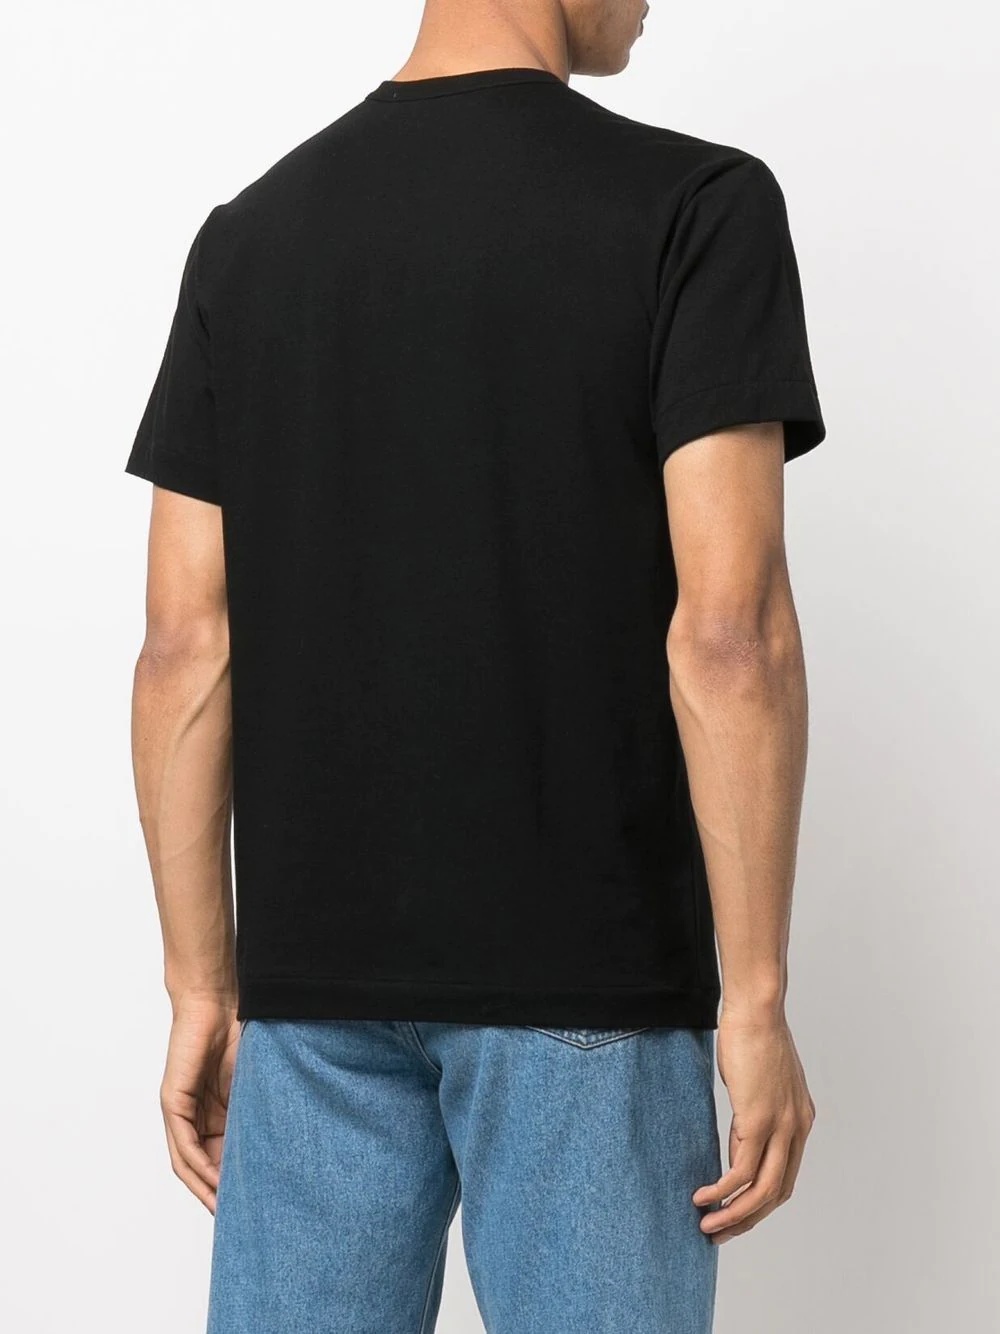 heart-motif cotton T-Shirt - 5